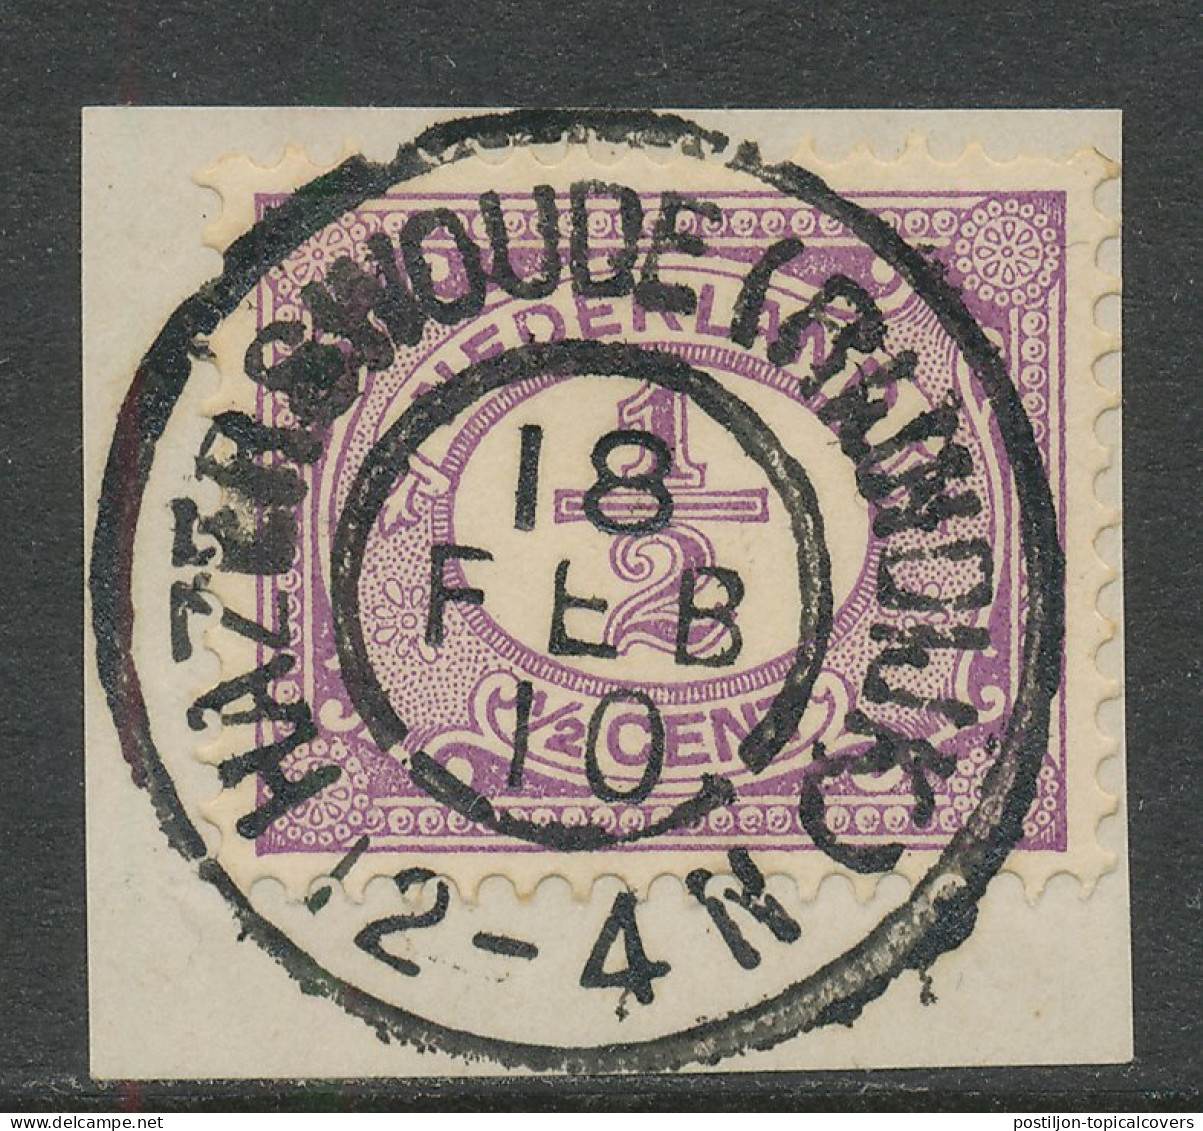 Grootrondstempel Hazerswoude ( Rijndijk ) 1910 - Postal History